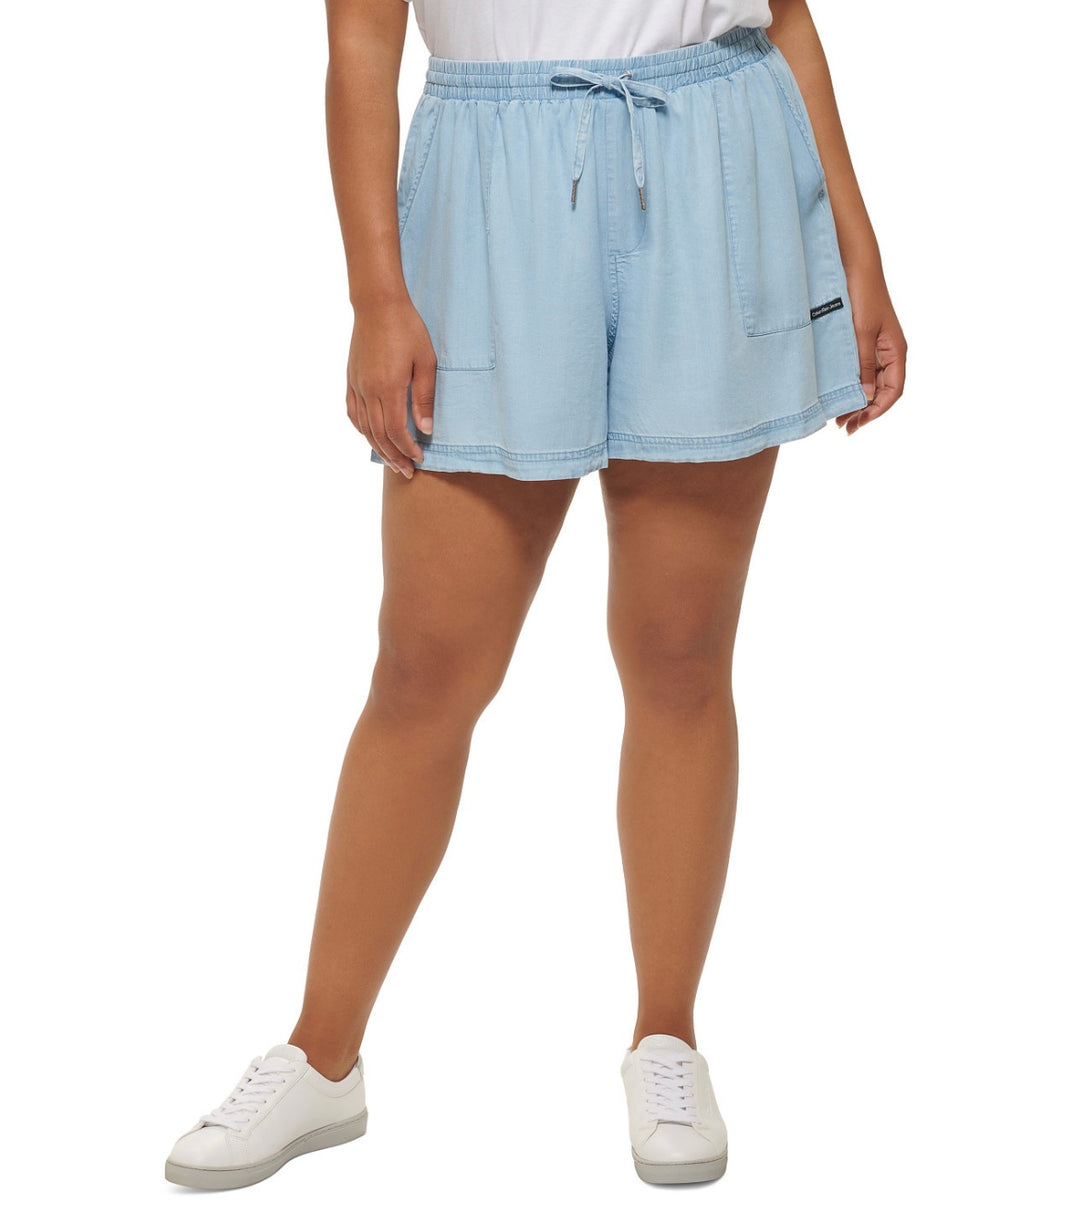 Calvin Klein Jeans Women's Trendy Drawstring Shorts Chambray Blue Plus Size 2X